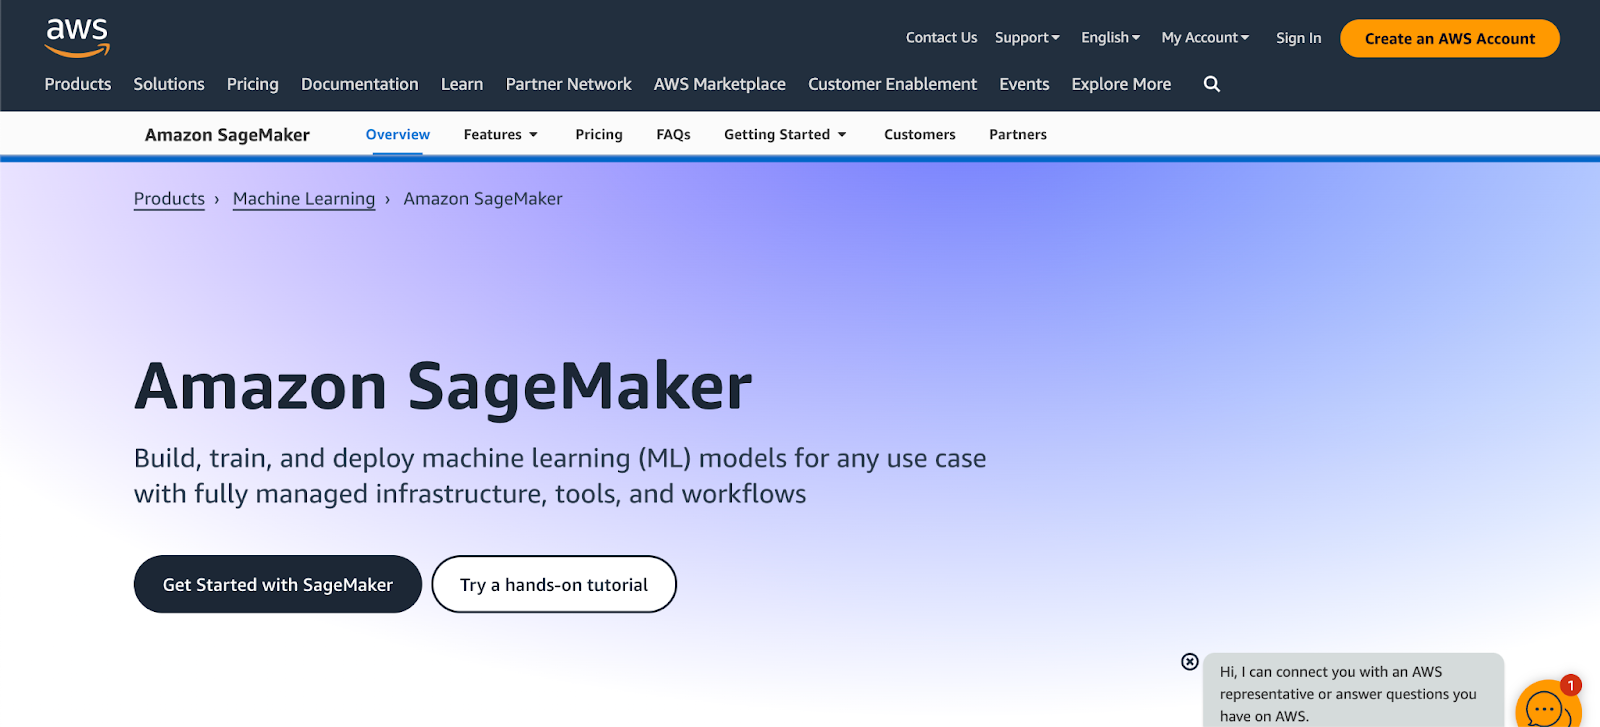 Amazon SageMaker as one of the leaders in MLaaS